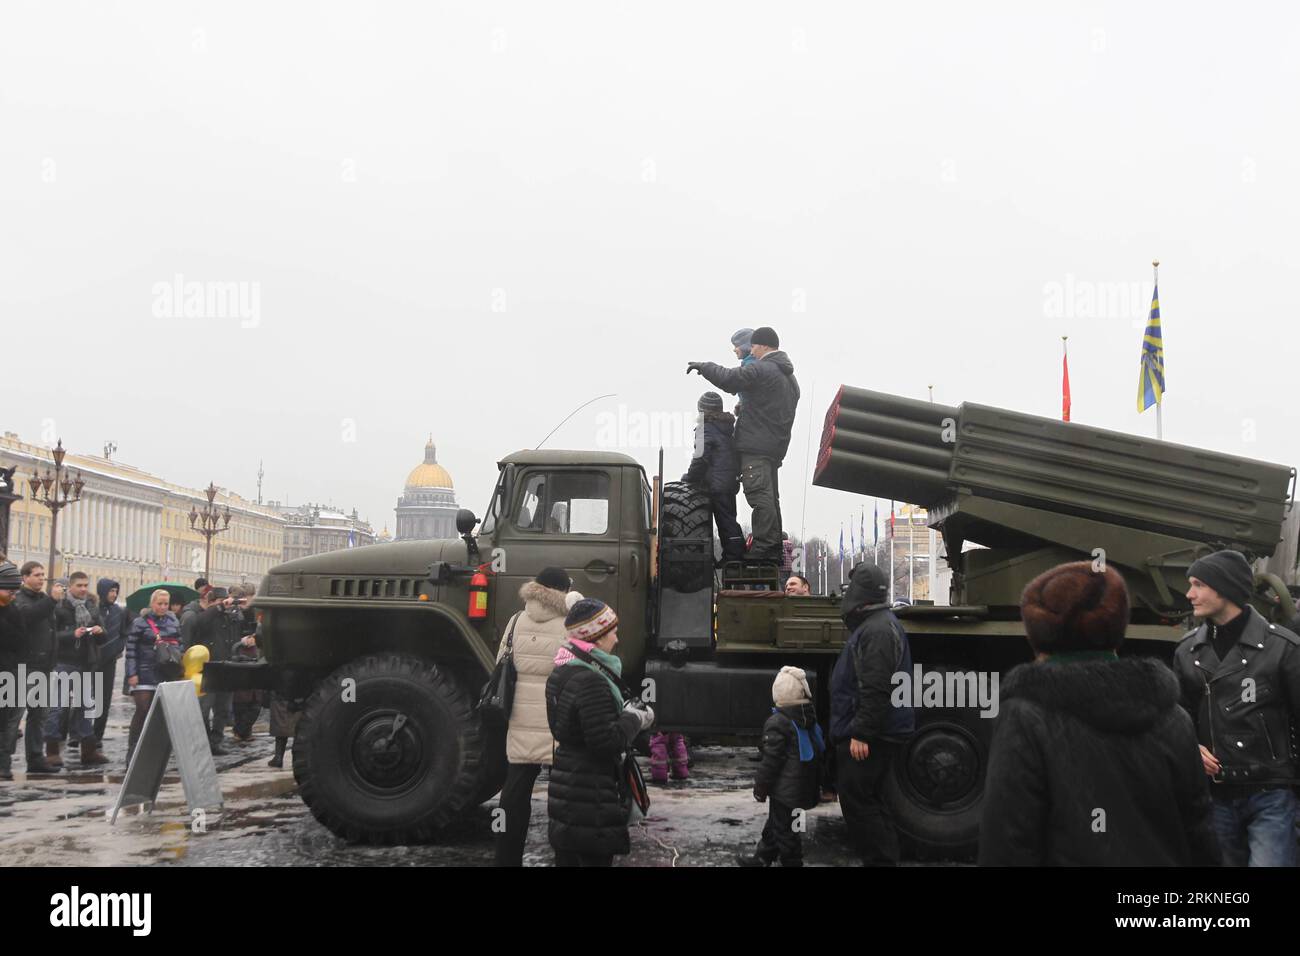 Bildnummer: 57103090 Datum: 23.02.2012 Copyright: imago/Xinhua (120223) -- ST. PETERSBURG, 23 febbraio 2012 (Xinhua) -- visita uno spettacolo di braccio per celebrare la Festa dei difensori della Patria a St Pietroburgo, Russia, 23 febbraio 2012. (Xinhua/Lu Jinbo) (zx) RUSSIA-ST. PIETROBURGO-DIFENSORI DELLA GIORNATA PATRIA PUBLICATIONxNOTxINxCHN Gesellschaft Tag der Verteidiger des Vaterlandes Milität Waffen xda x0x 2012 quer 57103090 Data 23 02 2012 Copyright Imago XINHUA San Pietroburgo 23 febbraio 2012 XINHUA Visit to Poor Show to Mark Defenders of the Fatherland Day in St Petersburg Russia 23 febbraio 2012 XINHUA Lu Jinbo Z Foto Stock